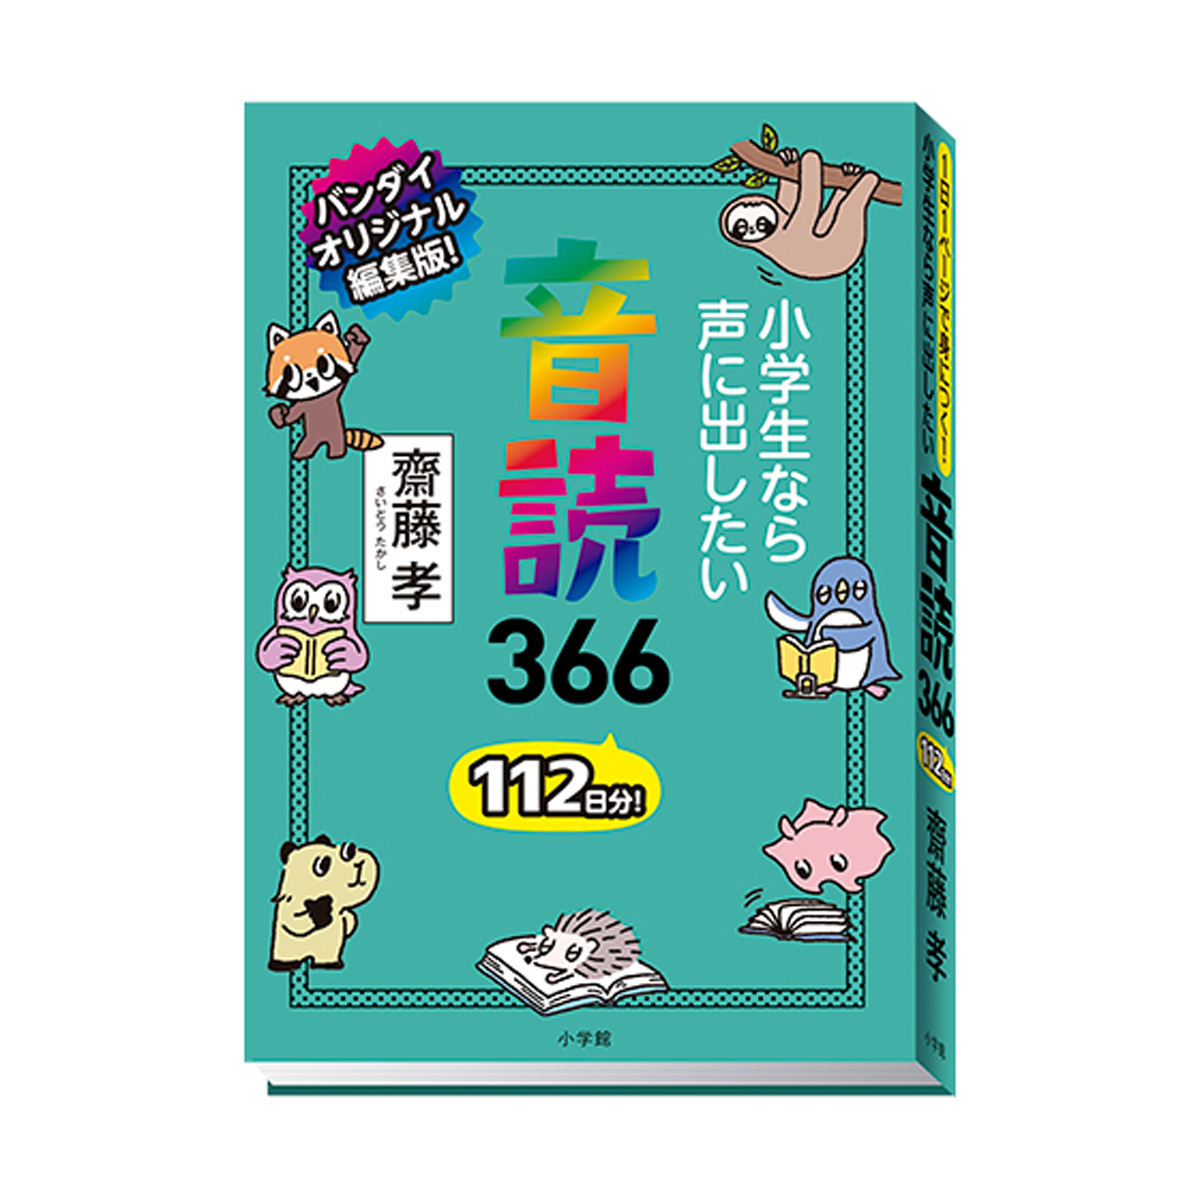 豆ガシャ本 教養366 シリーズ | ナムコパークス オンラインストア